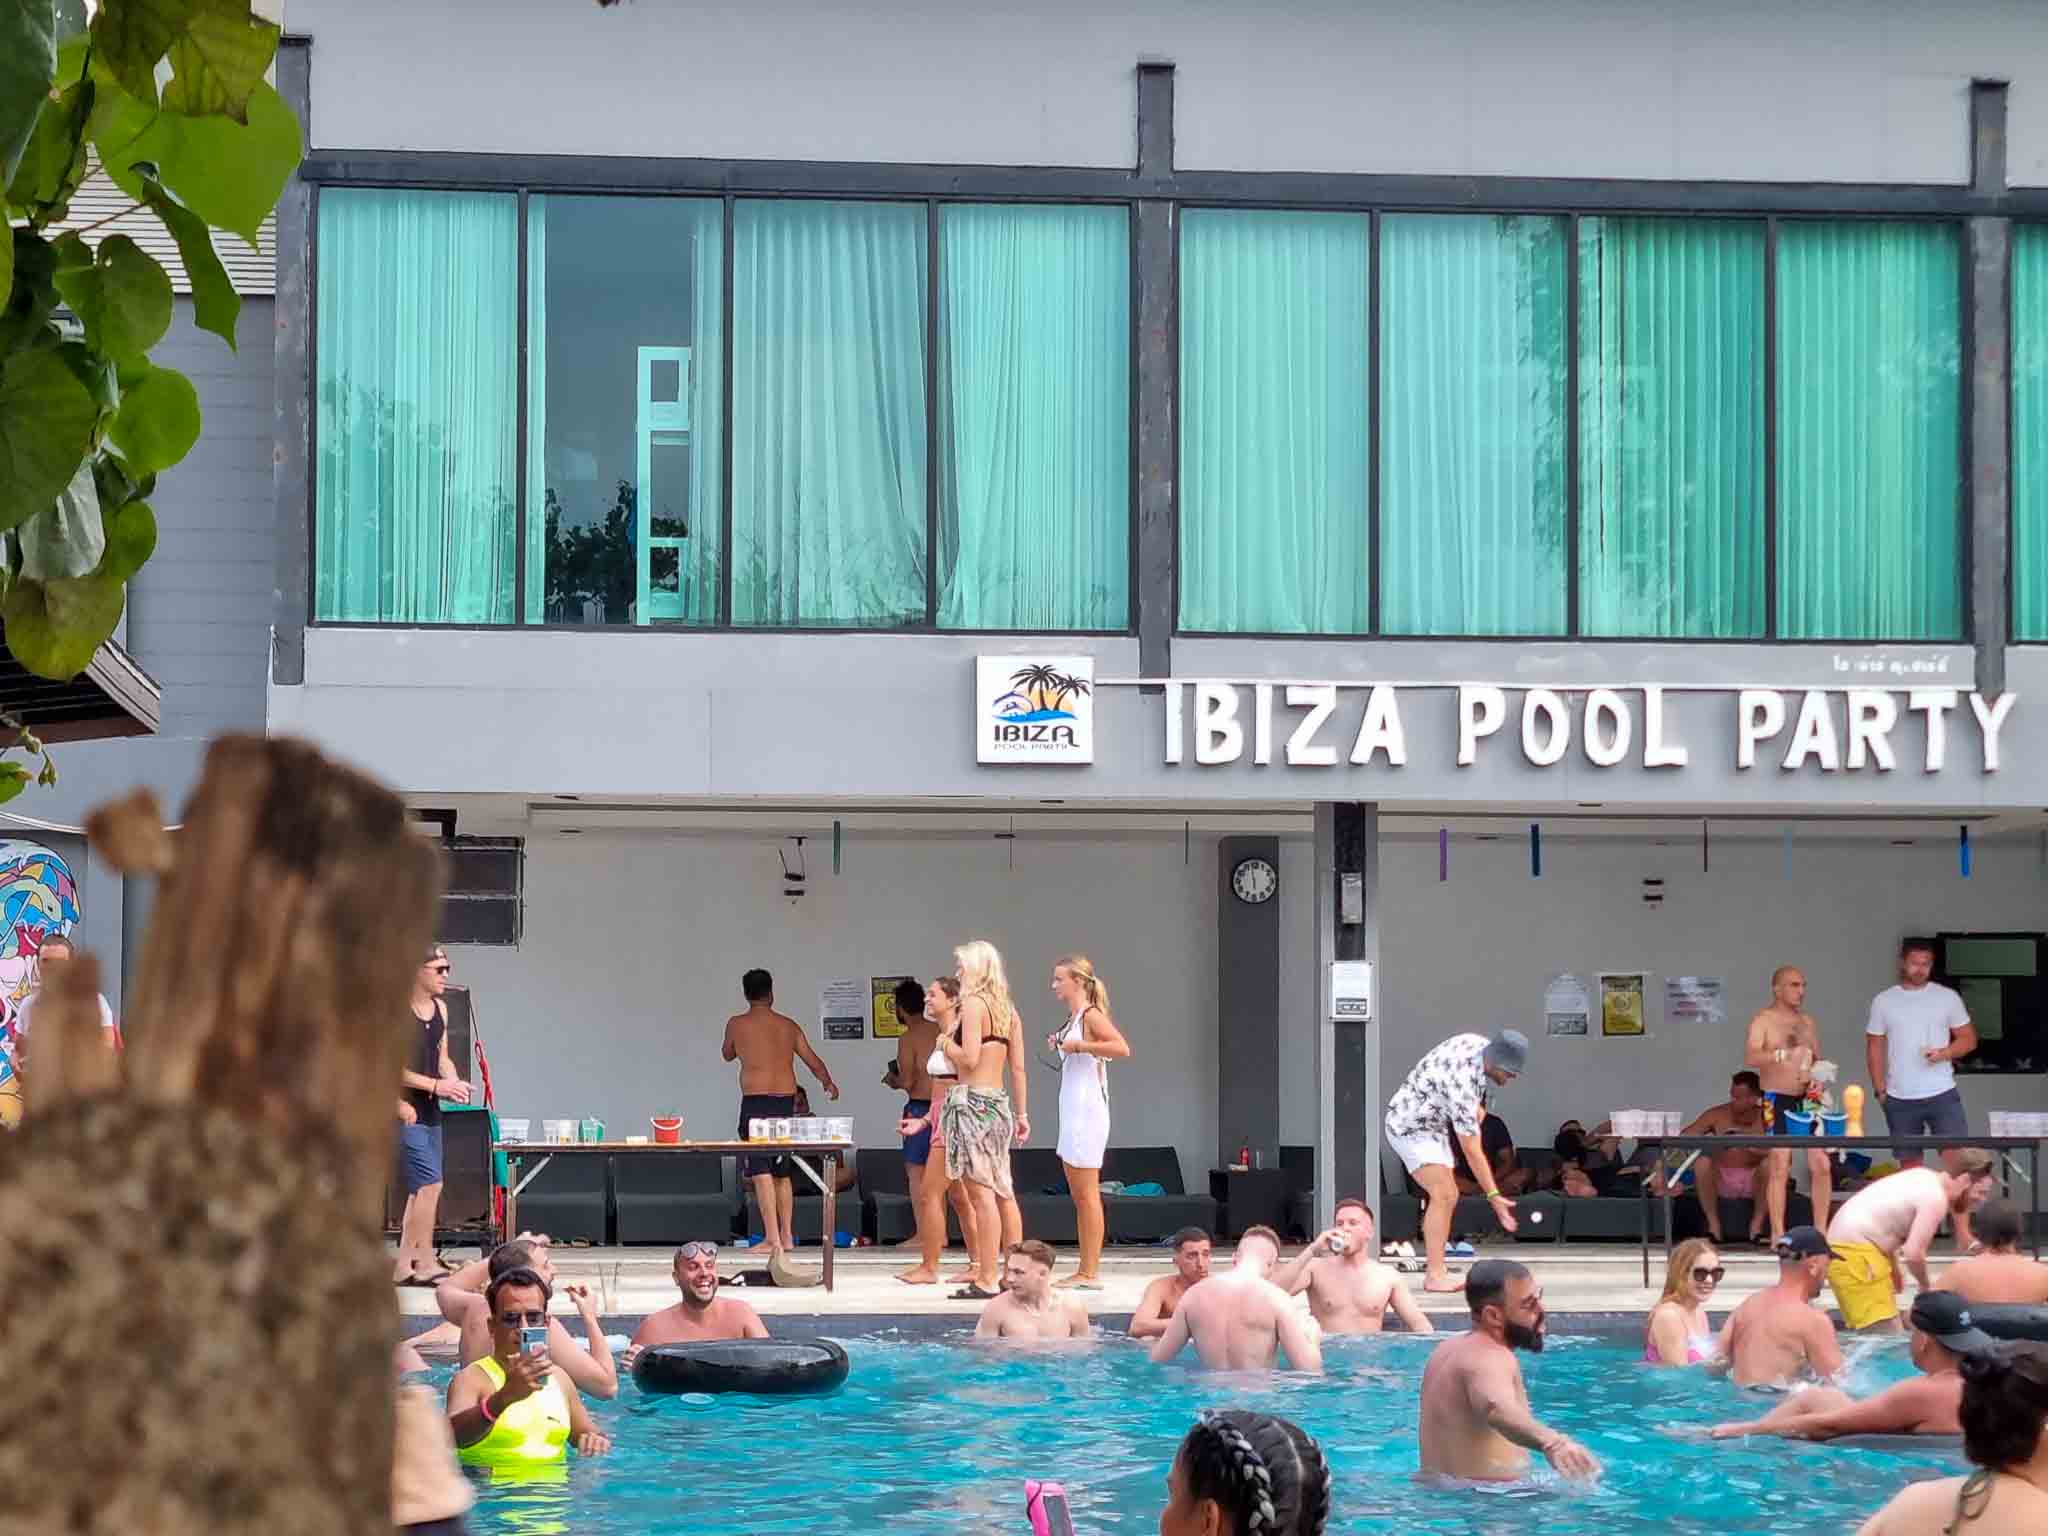 Piscina do Ibiza em Phi Phi, a pool party mais animada da ilha e da Tailândia.